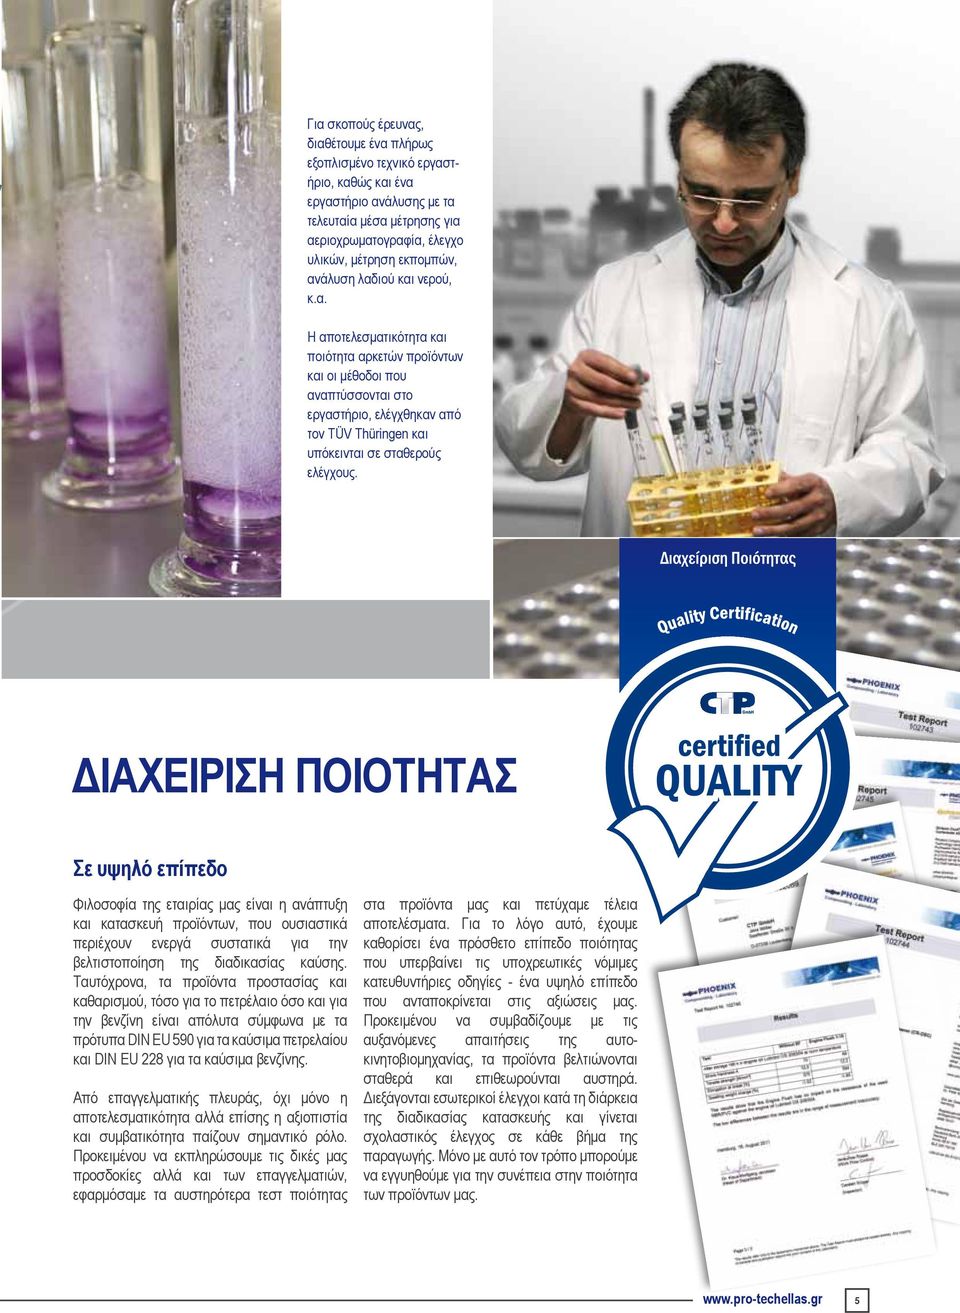 Διαχείριση Ποιότητας Σε υψηλό επίπεδο Φιλοσοφία της εταιρίας μας είναι η ανάπτυξη και κατασκευή προϊόντων, που ουσιαστικά περιέχουν ενεργά συστατικά για την βελτιστοποίηση της διαδικασίας καύσης.